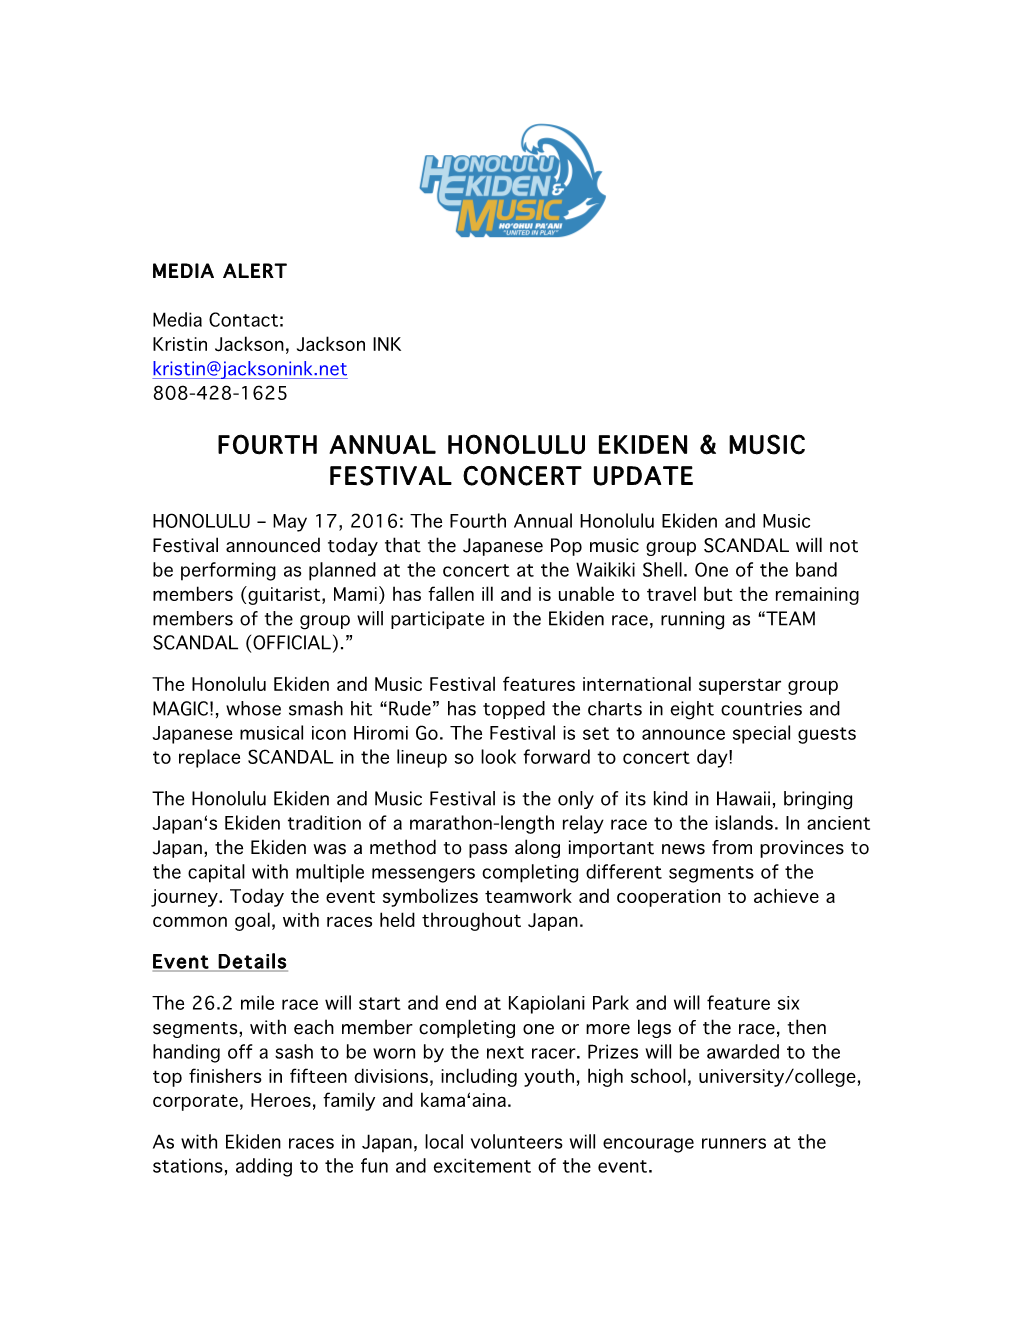 Fourth Annual Honolulu Ekiden & Music Festival